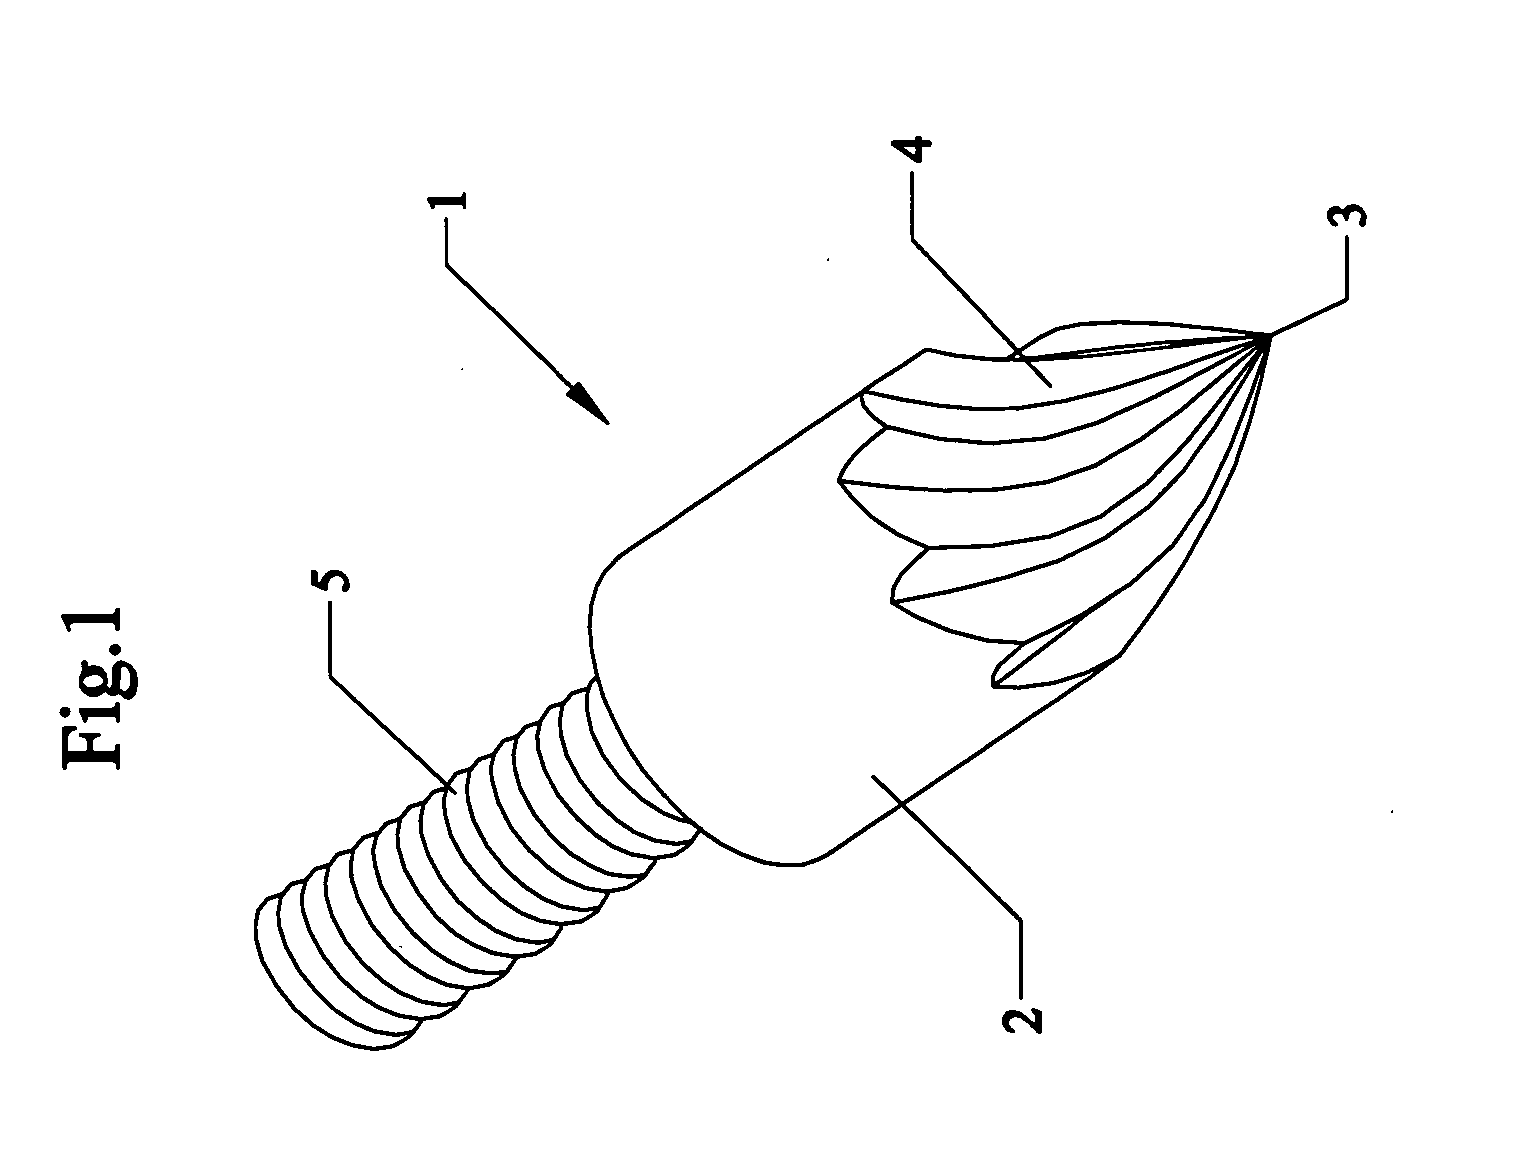 Turbine-tip arrowhead